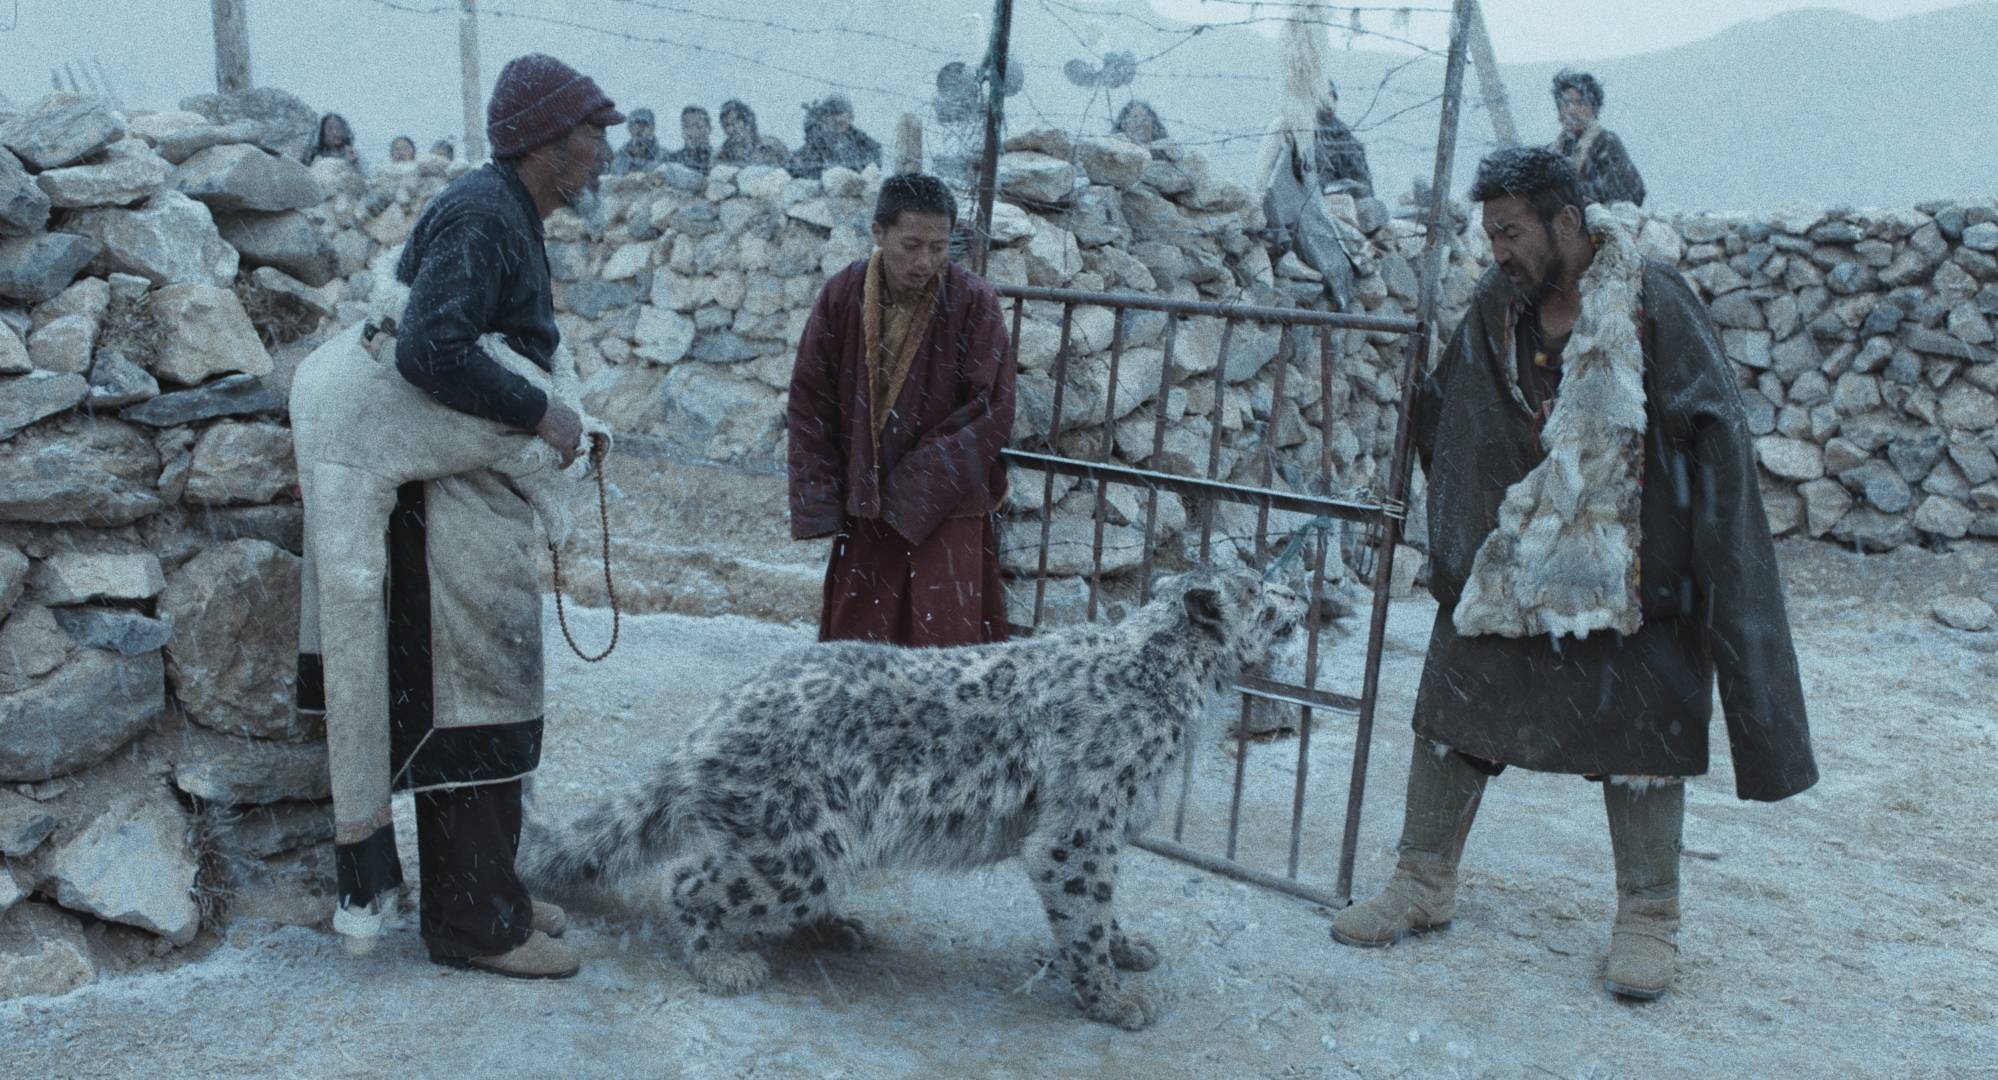 万玛才旦执导《雪豹》入围东京电影节主竞赛单元 讲述人与动物相处的故事